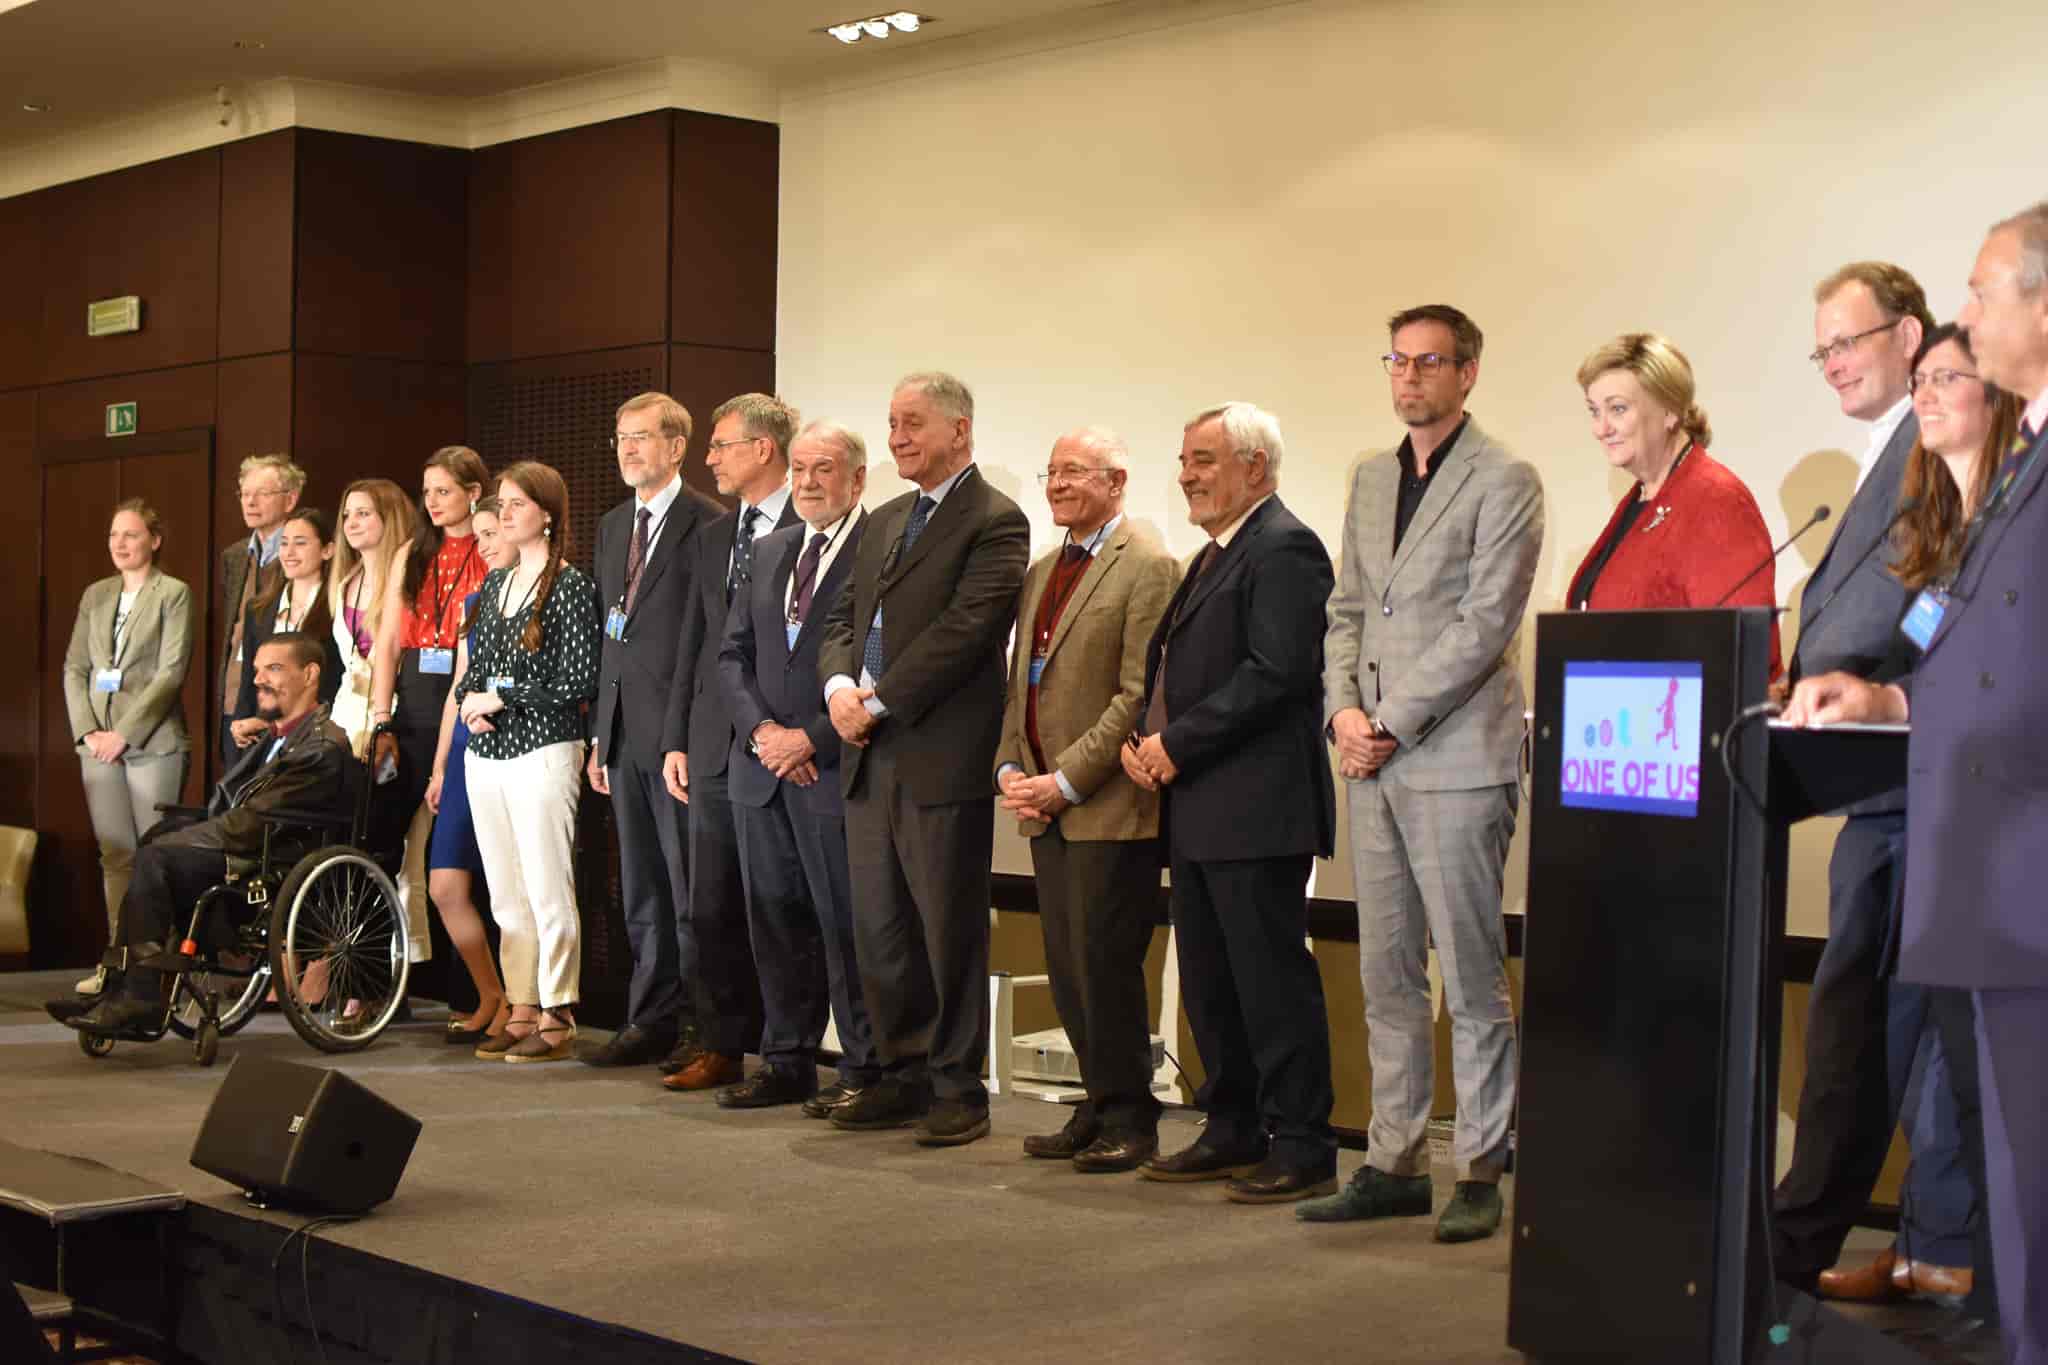 Foto de grupo de los ponentes del congreso One of Us 2022 en Bruselas